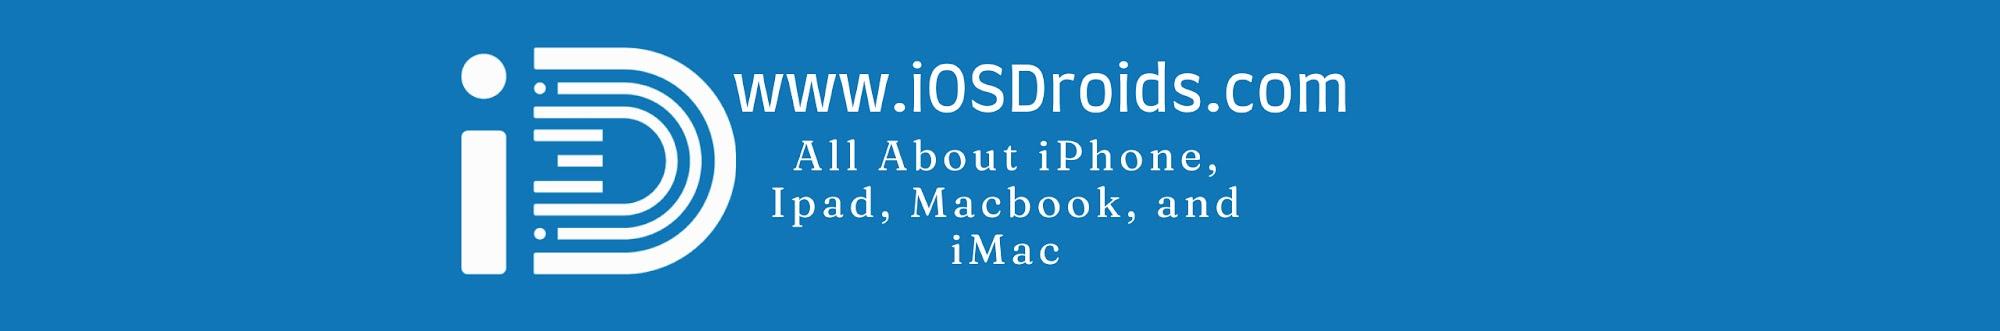 iOS Droids